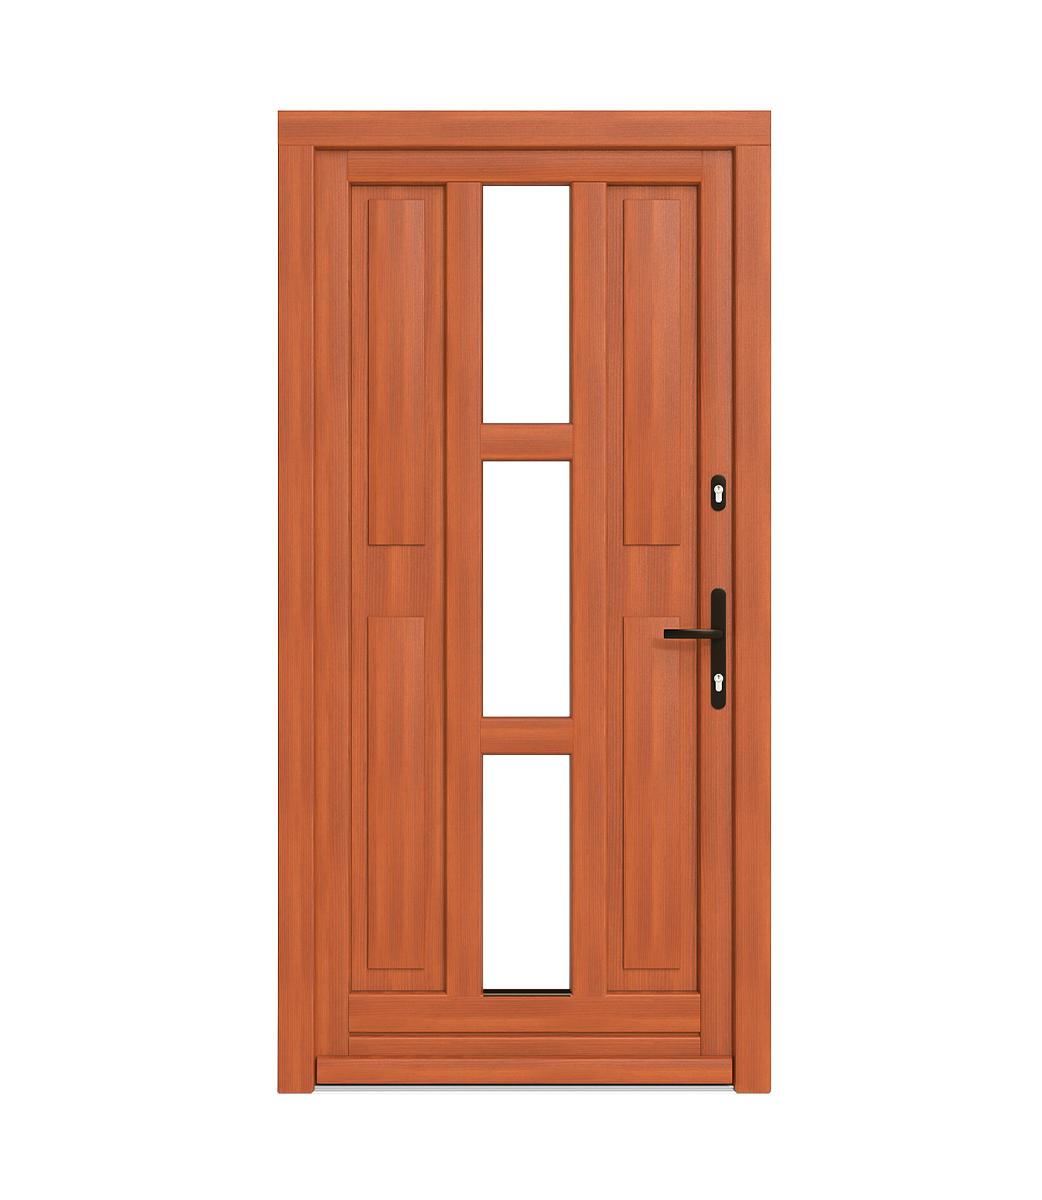 Soportes de madera para puertas